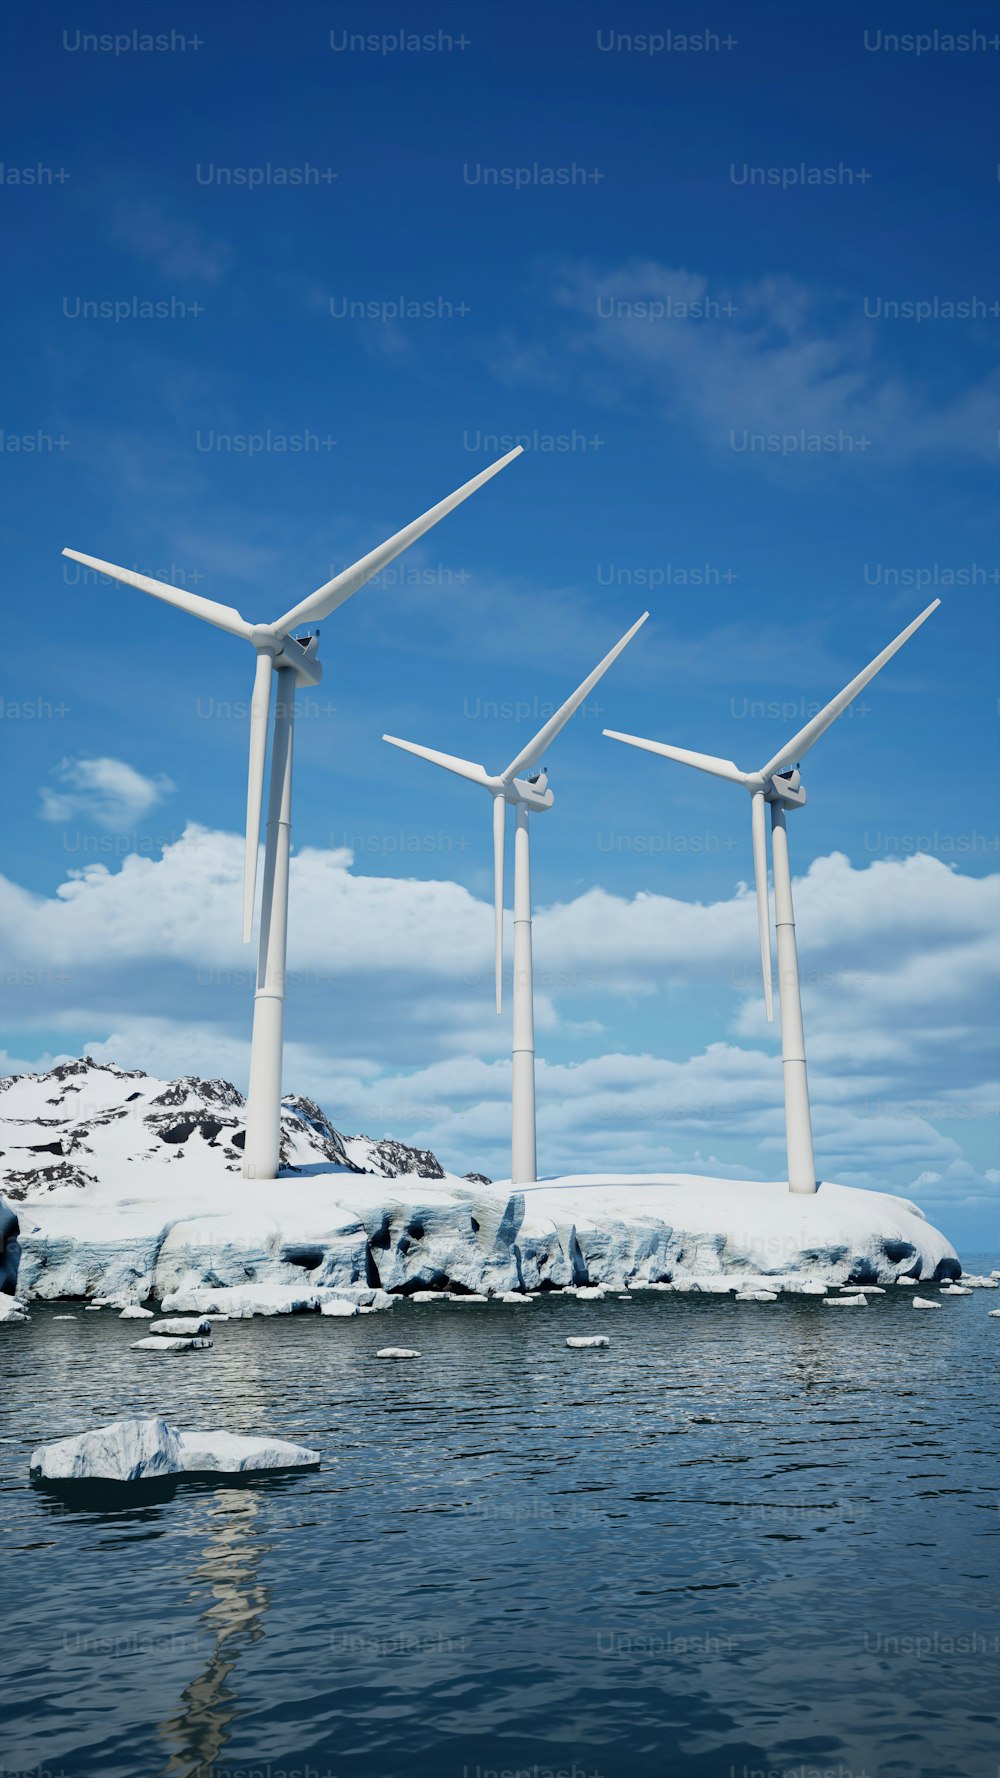 eine Gruppe von Windkraftanlagen, die auf einer schneebedeckten Insel stehen